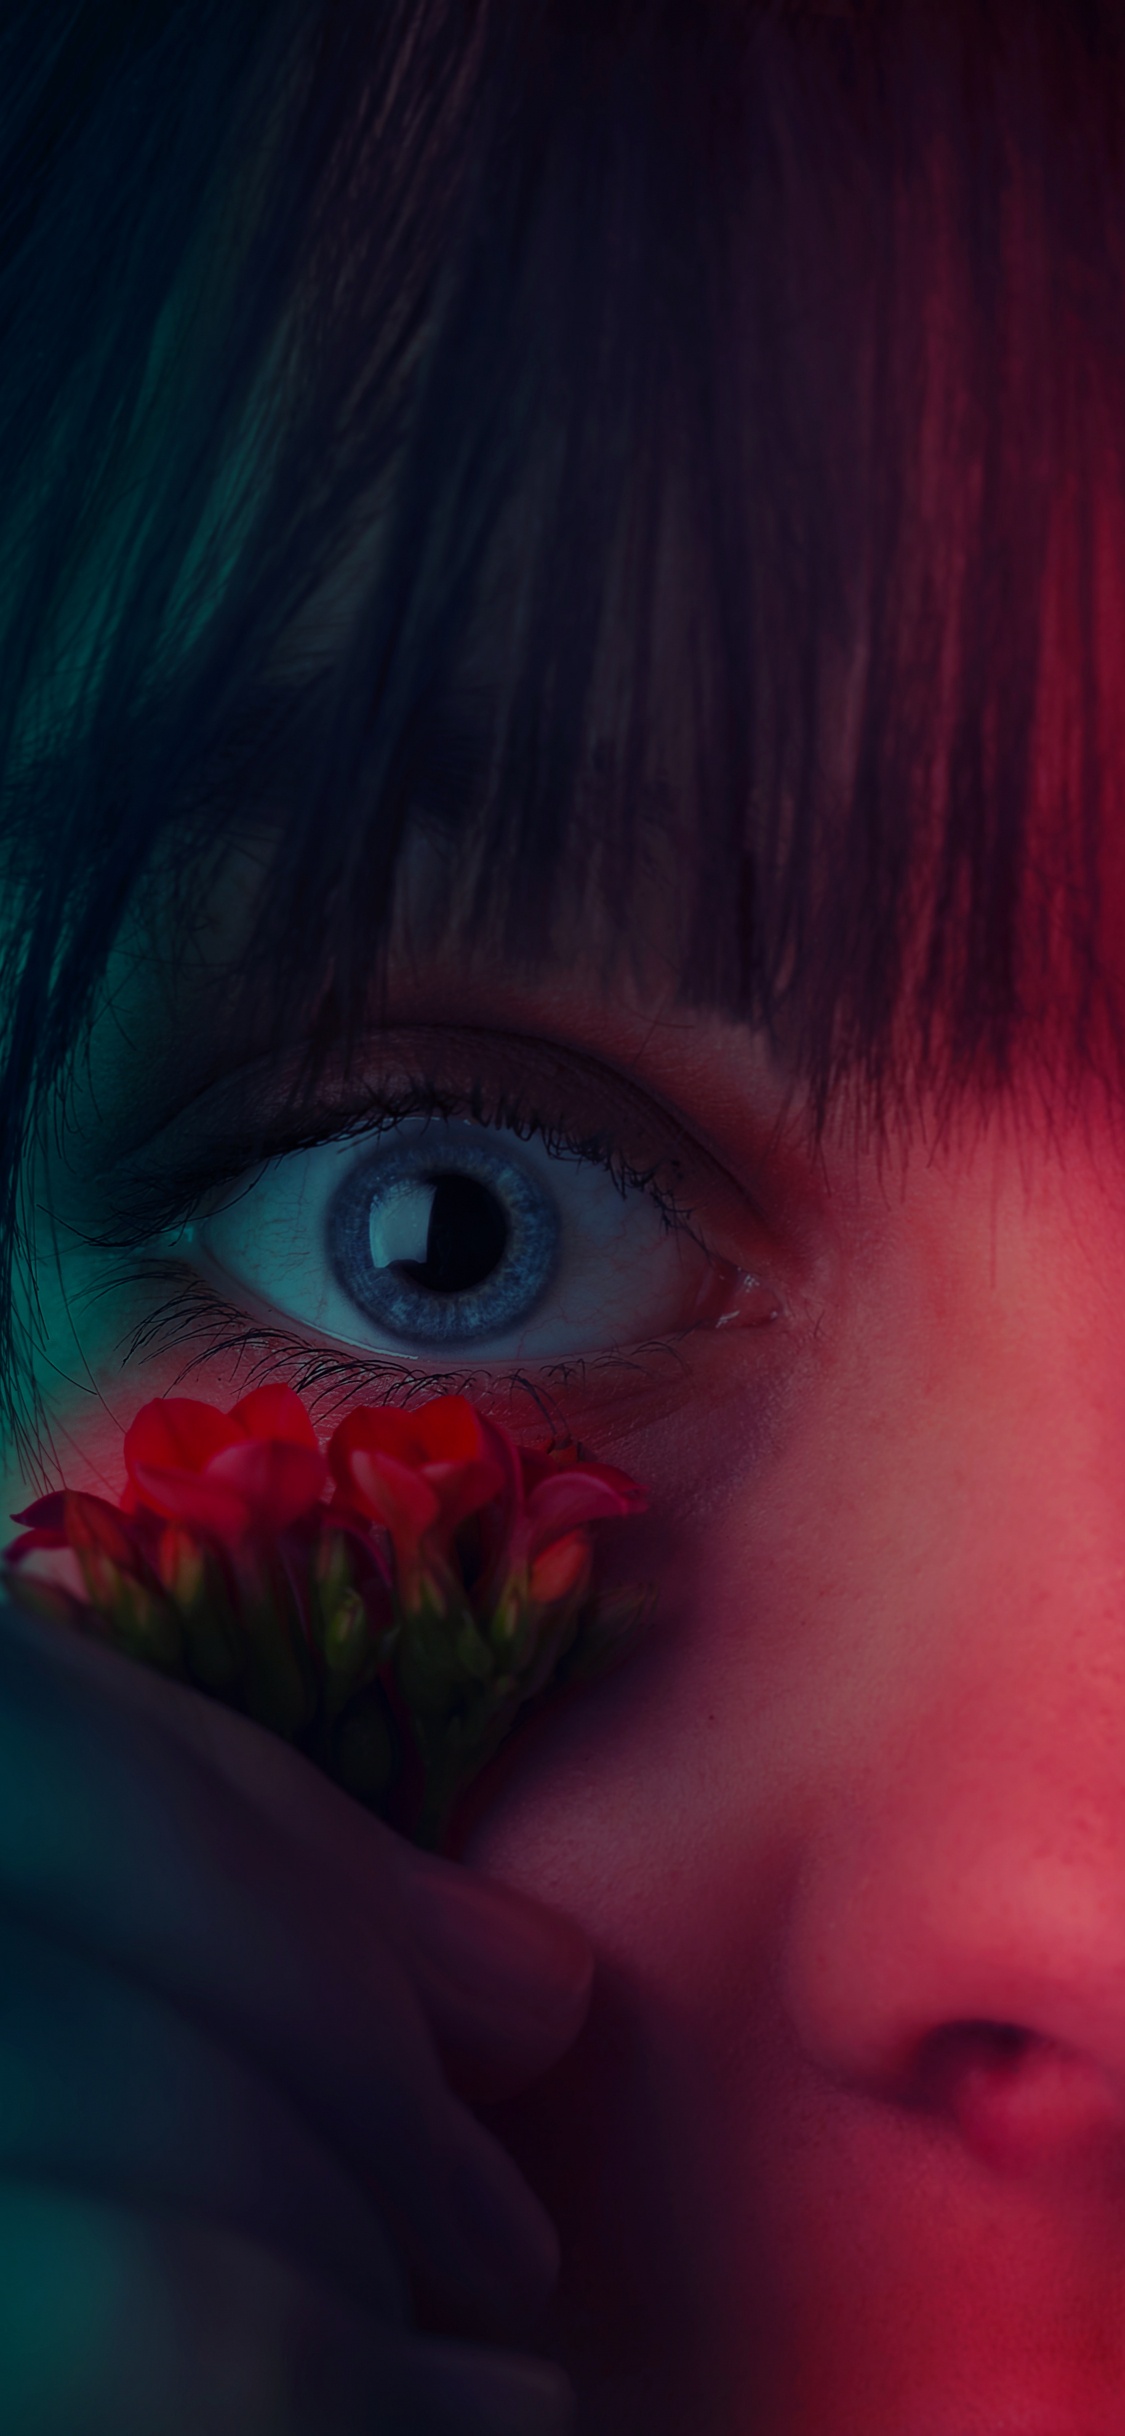 Mädchen Mit Roter Blume im Gesicht. Wallpaper in 1125x2436 Resolution